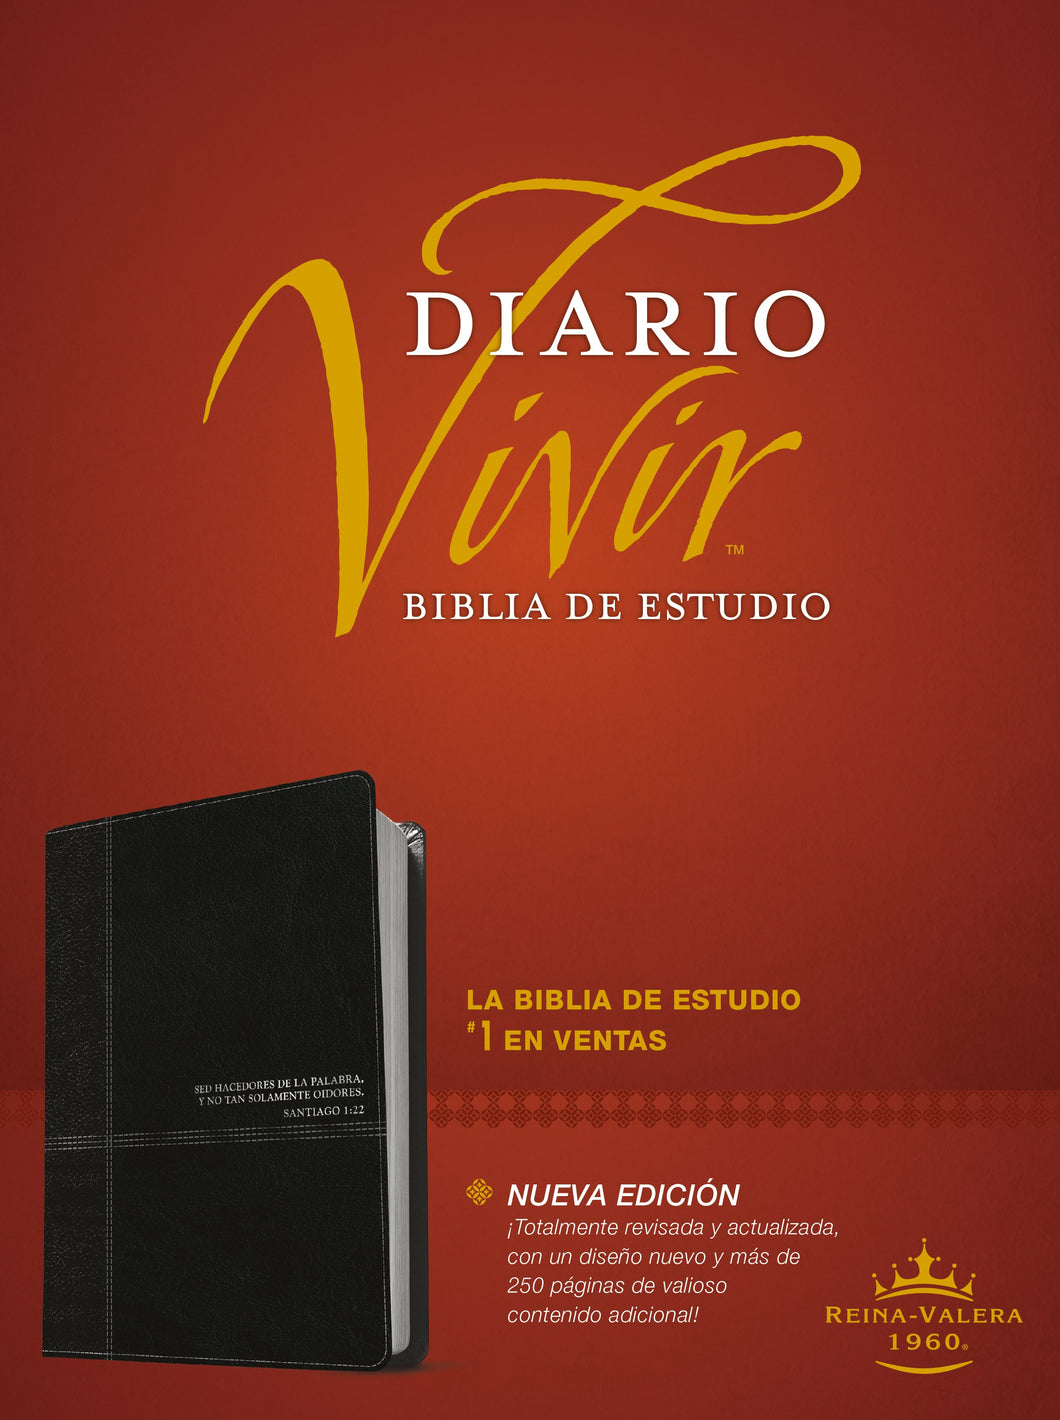 Spanish-RVR 1960 Life Application Study Bible (Biblia de Estudio del Diario Vivir)-Black LeatherLike